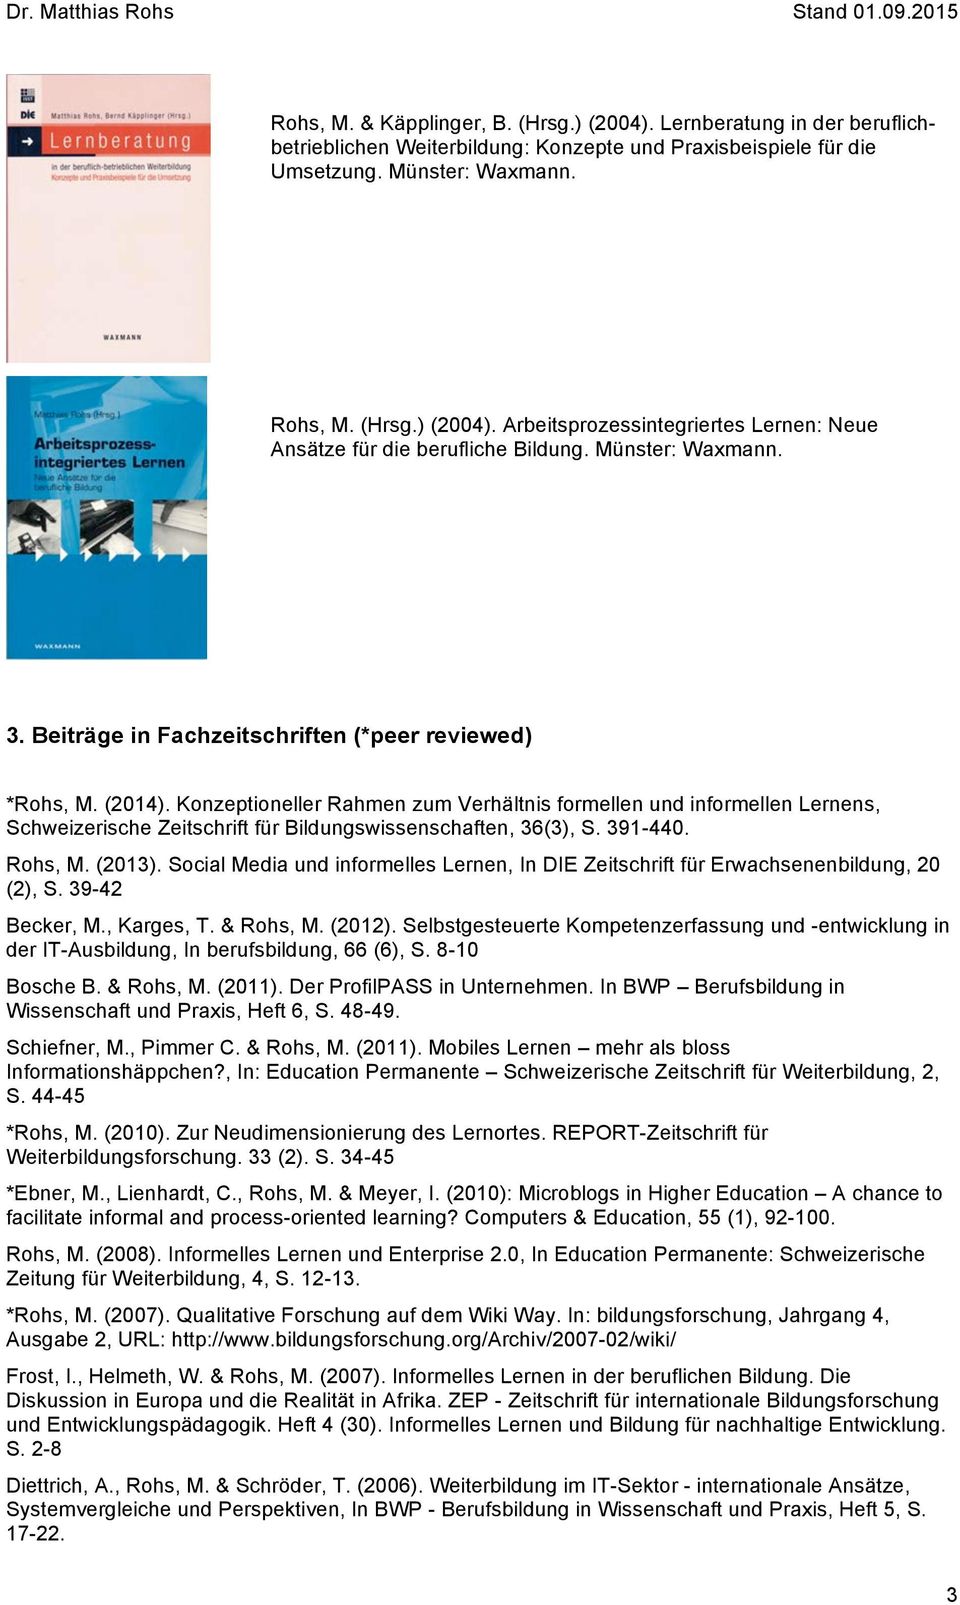 Konzeptioneller Rahmen zum Verhältnis formellen und informellen Lernens, Schweizerische Zeitschrift für Bildungswissenschaften, 36(3), S. 391-440. Rohs, M. (2013).